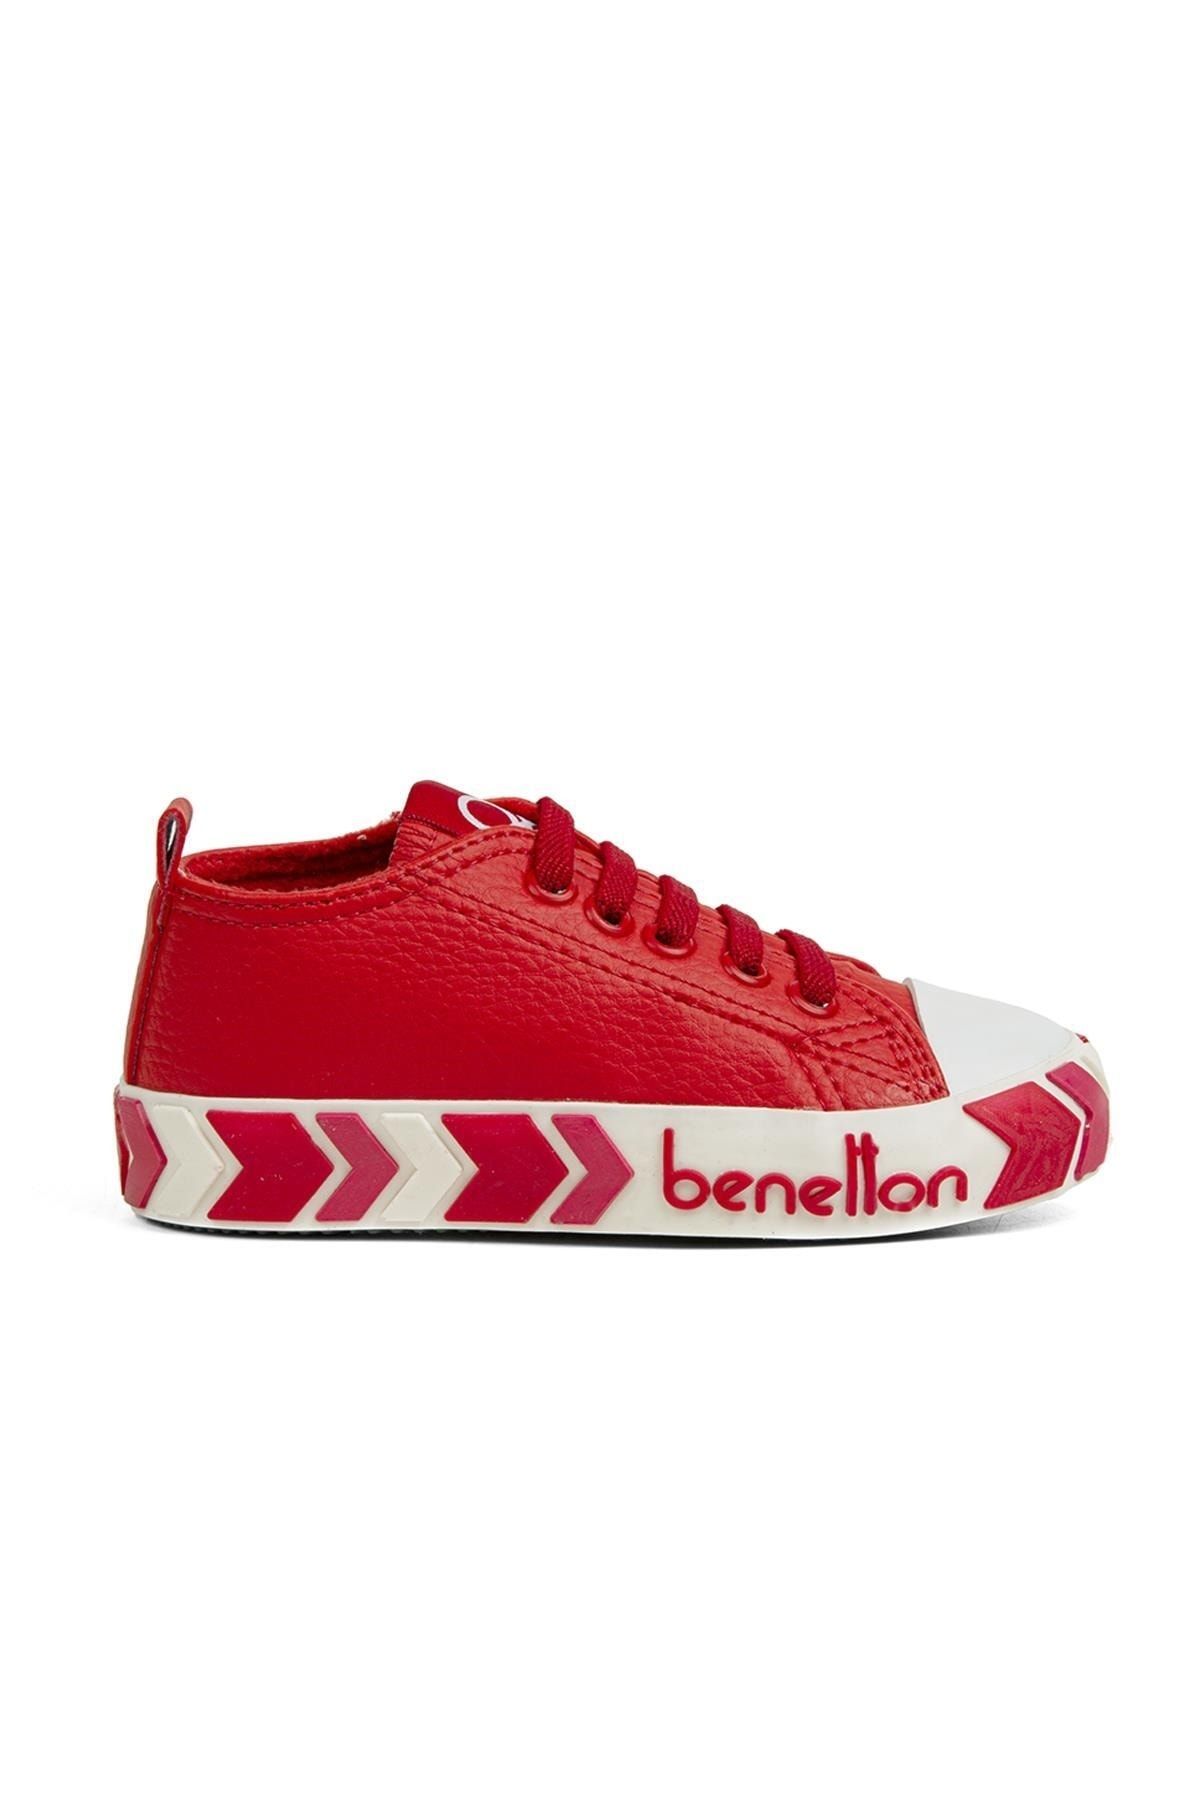 Benetton ® | Bn-30785 - 3394 Kirmizi - Çocuk Spor Ayakkabı